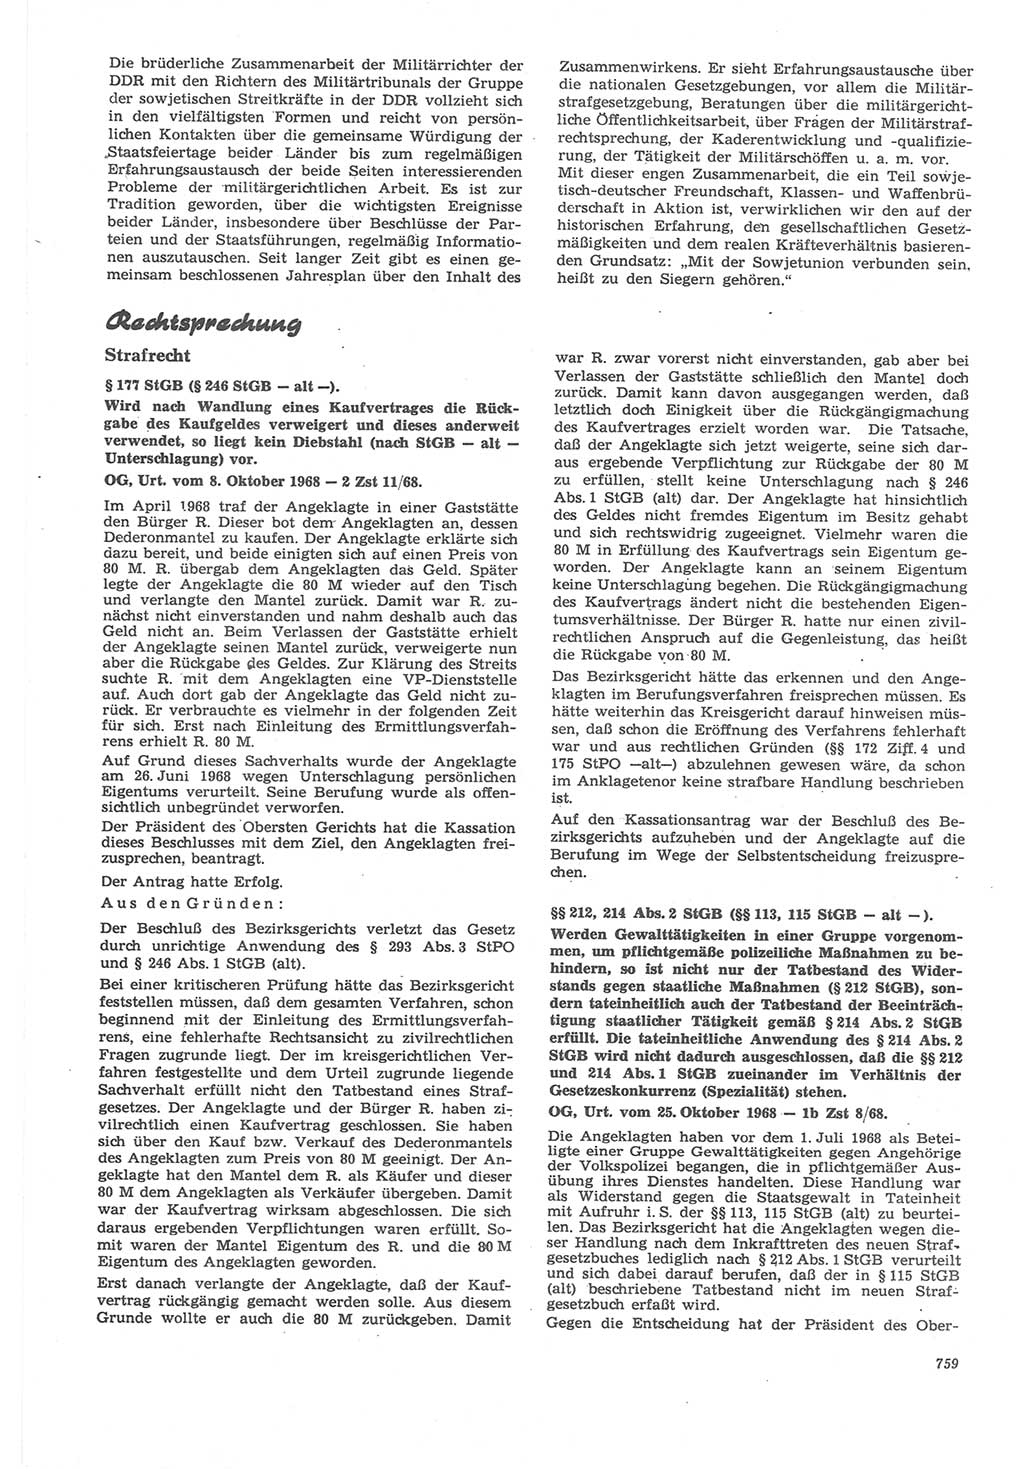 Neue Justiz (NJ), Zeitschrift für Recht und Rechtswissenschaft [Deutsche Demokratische Republik (DDR)], 22. Jahrgang 1968, Seite 759 (NJ DDR 1968, S. 759)